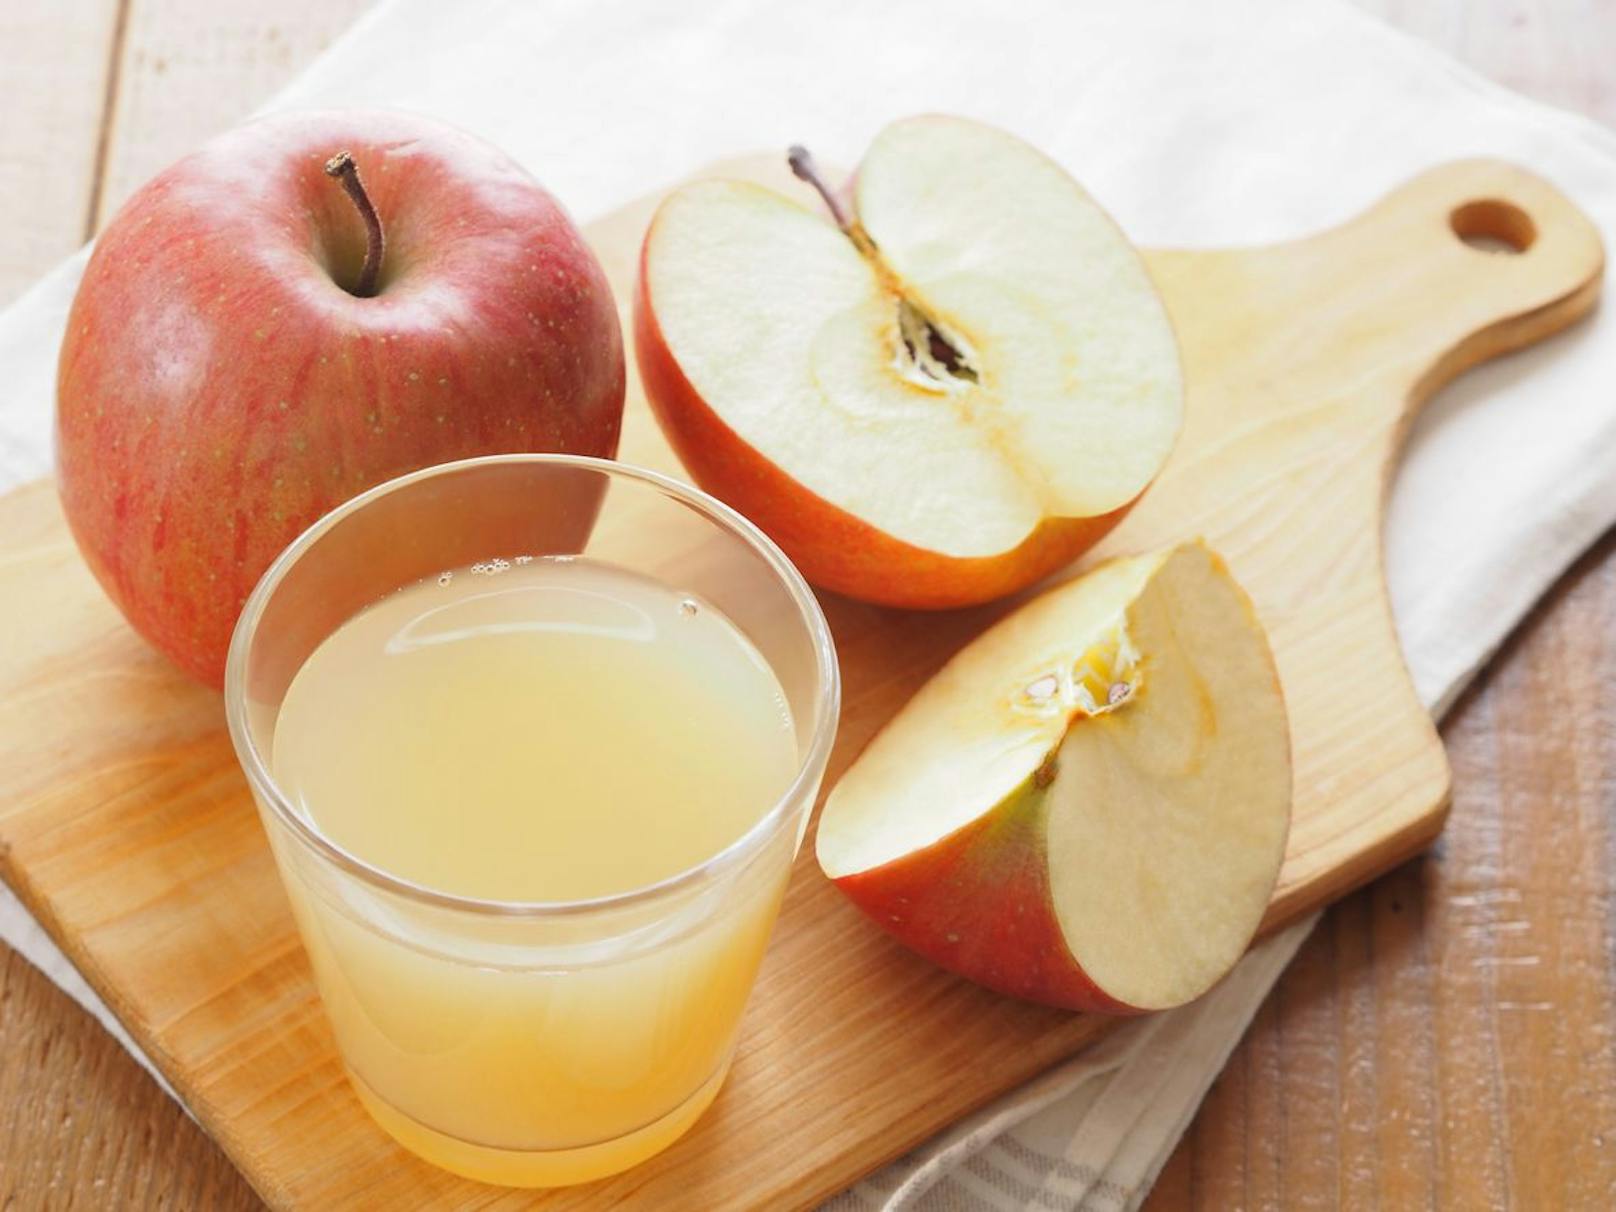 Du kannst gerne frische Äpfel verputzen, aber in Flüssigform solltest du lieber naturtrüben Apfelsaft trinken. Dieser enthält den Ballaststoff Pektin, der deine Verdauung fördert.